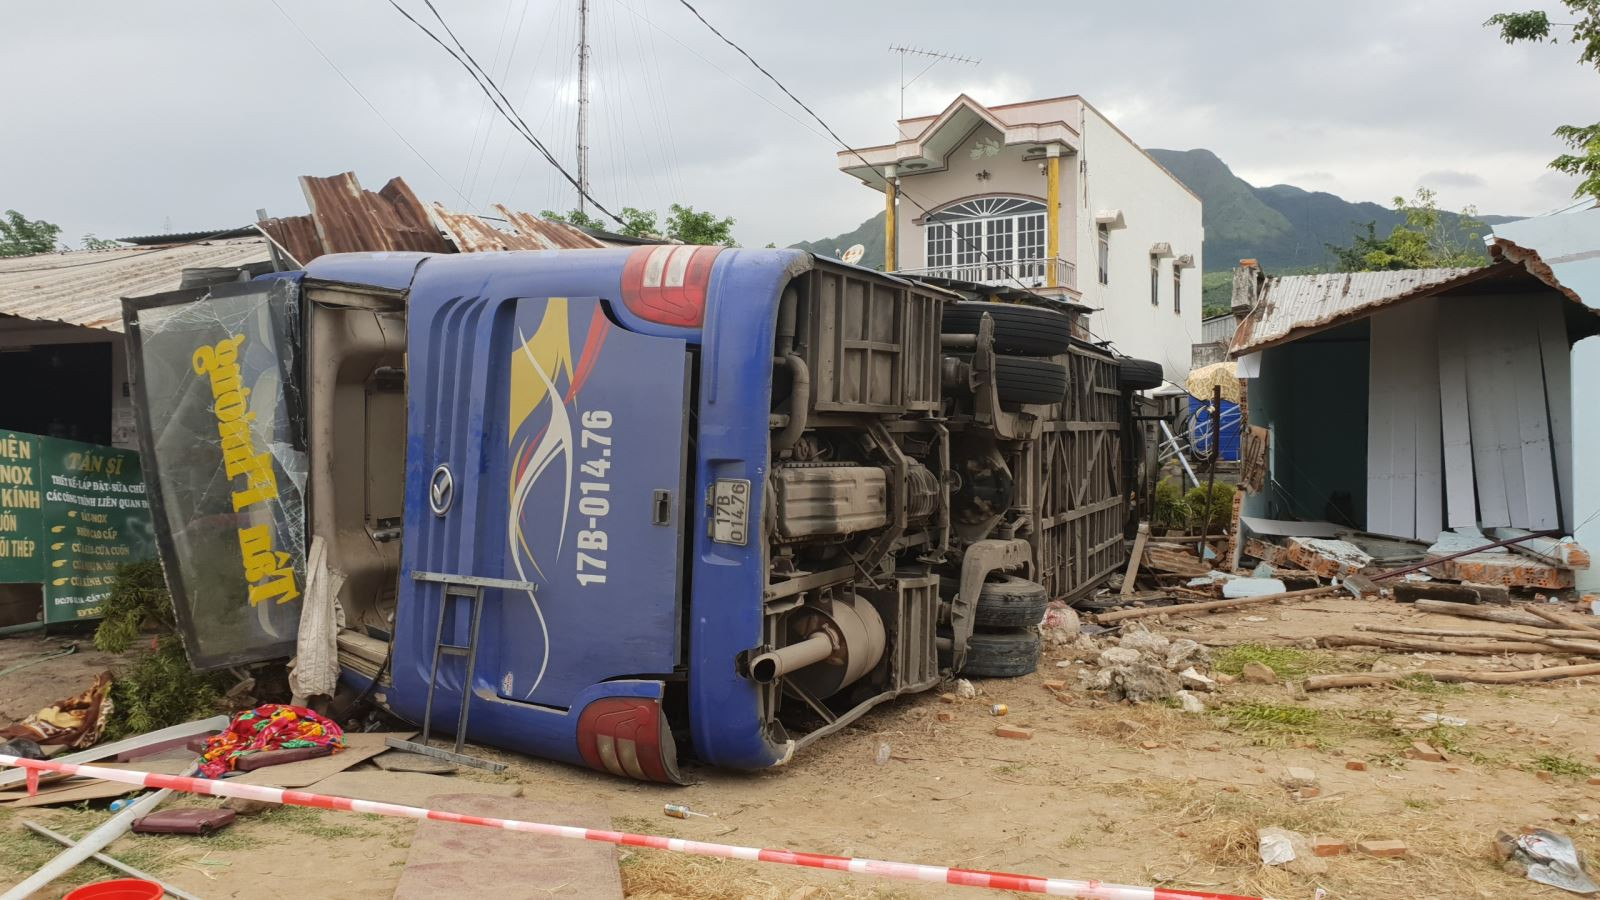 Xe khách chạy 84 km/h trước khi đâm sập nhà dân ở Khánh Hòa